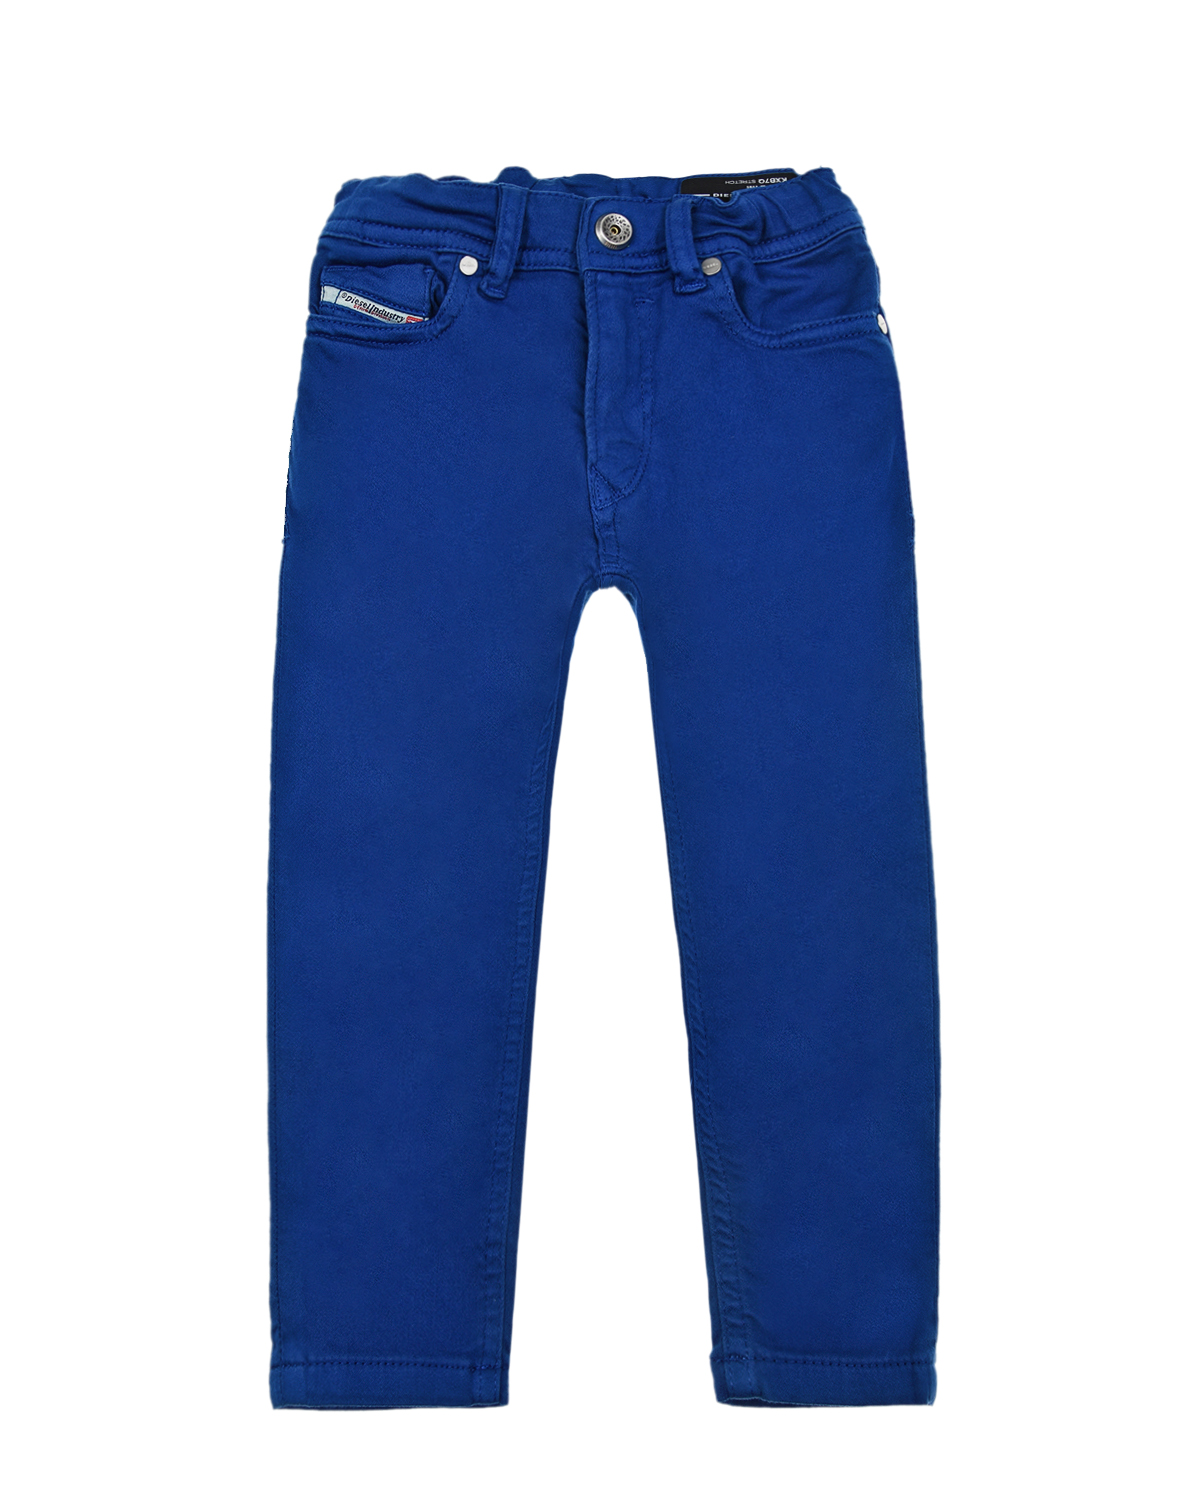 Синие джинсовые джоггеры Diesel детские, размер 80, цвет синий - фото 1